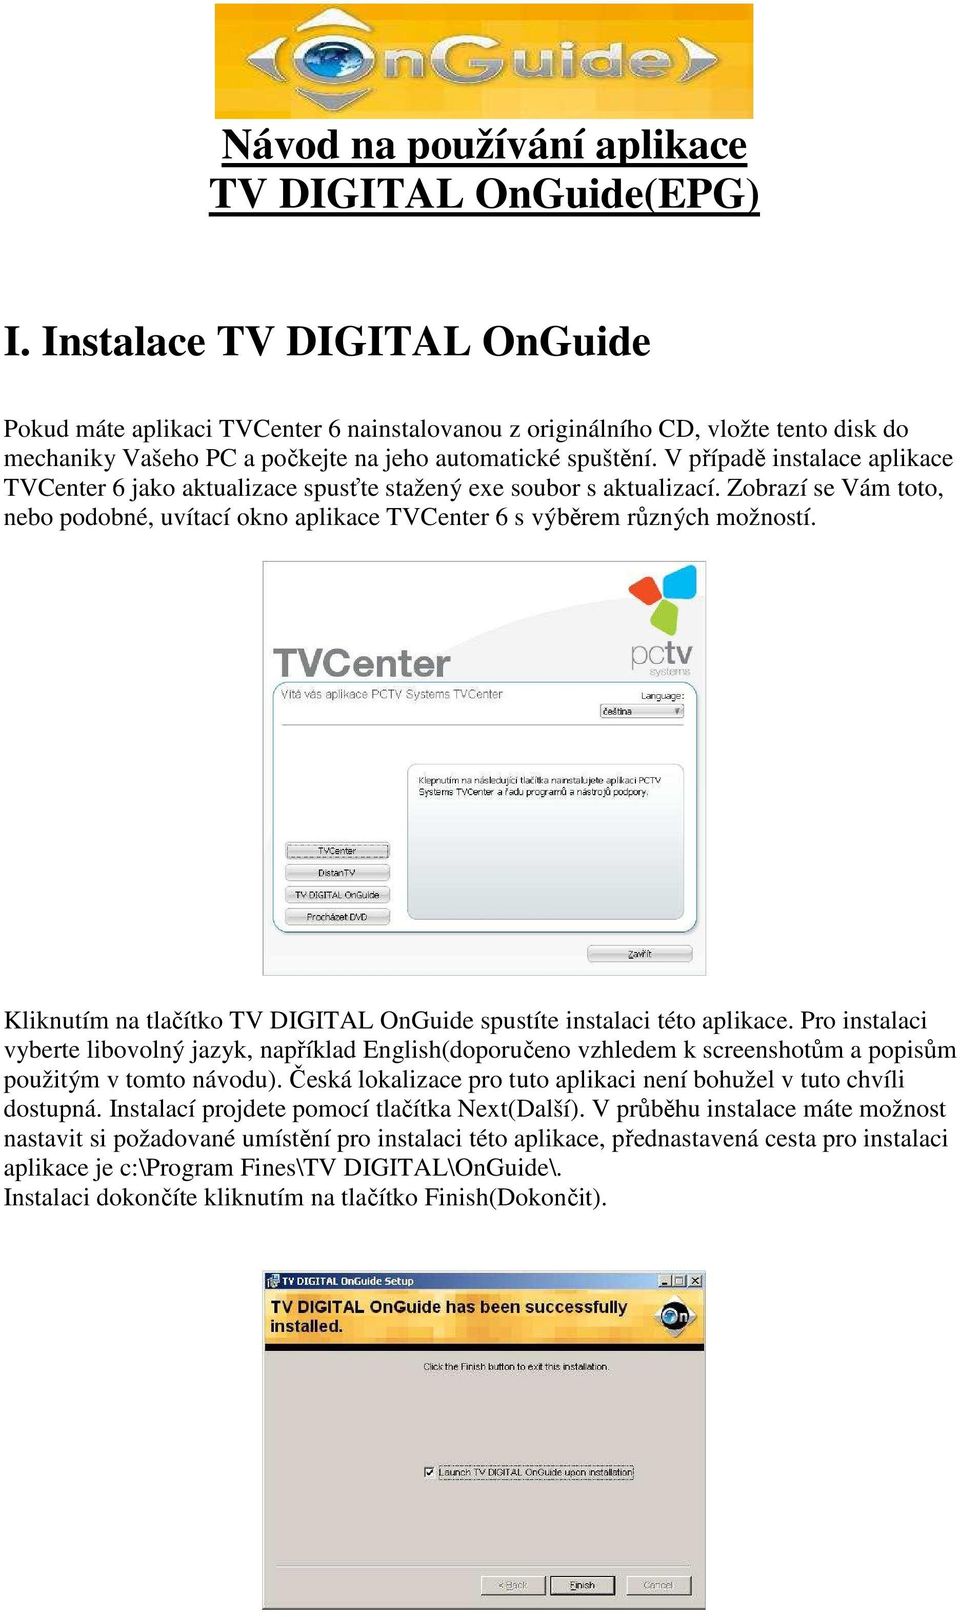 V případě instalace aplikace TVCenter 6 jako aktualizace spusťte stažený exe soubor s aktualizací. Zobrazí se Vám toto, nebo podobné, uvítací okno aplikace TVCenter 6 s výběrem různých možností.